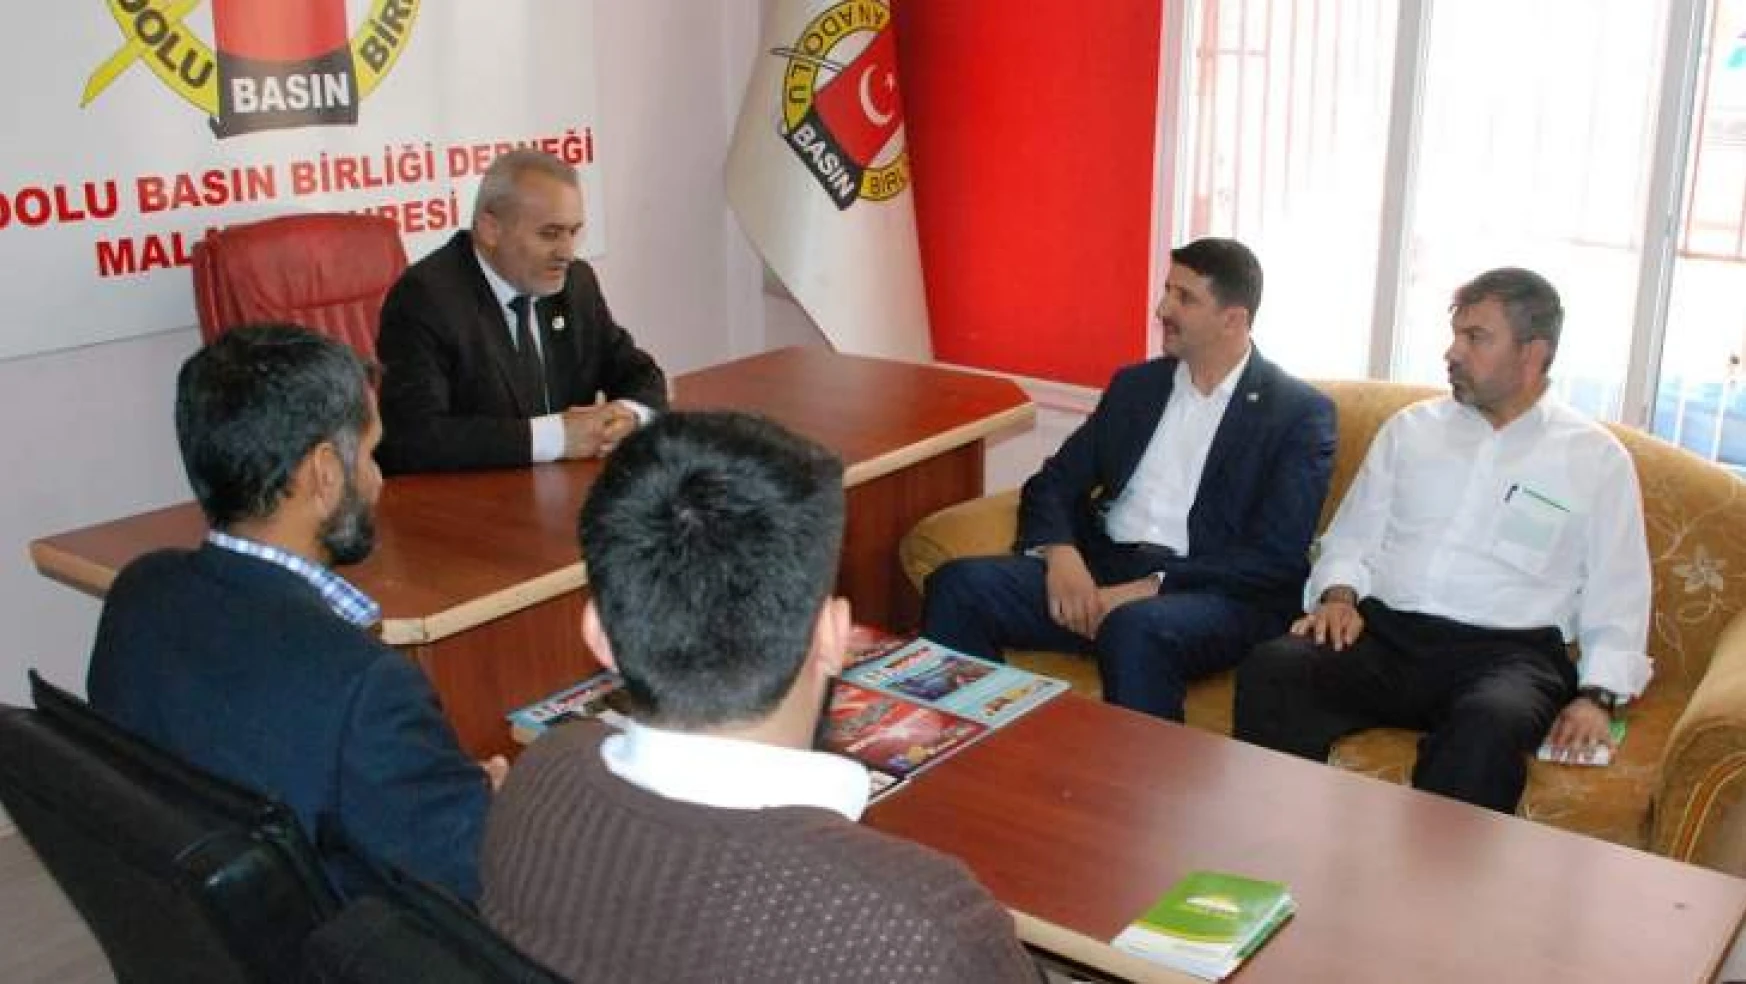 HÜDA PAR Malatya İl Yönetiminden Anadolu Basın Birliğine Ziyaret